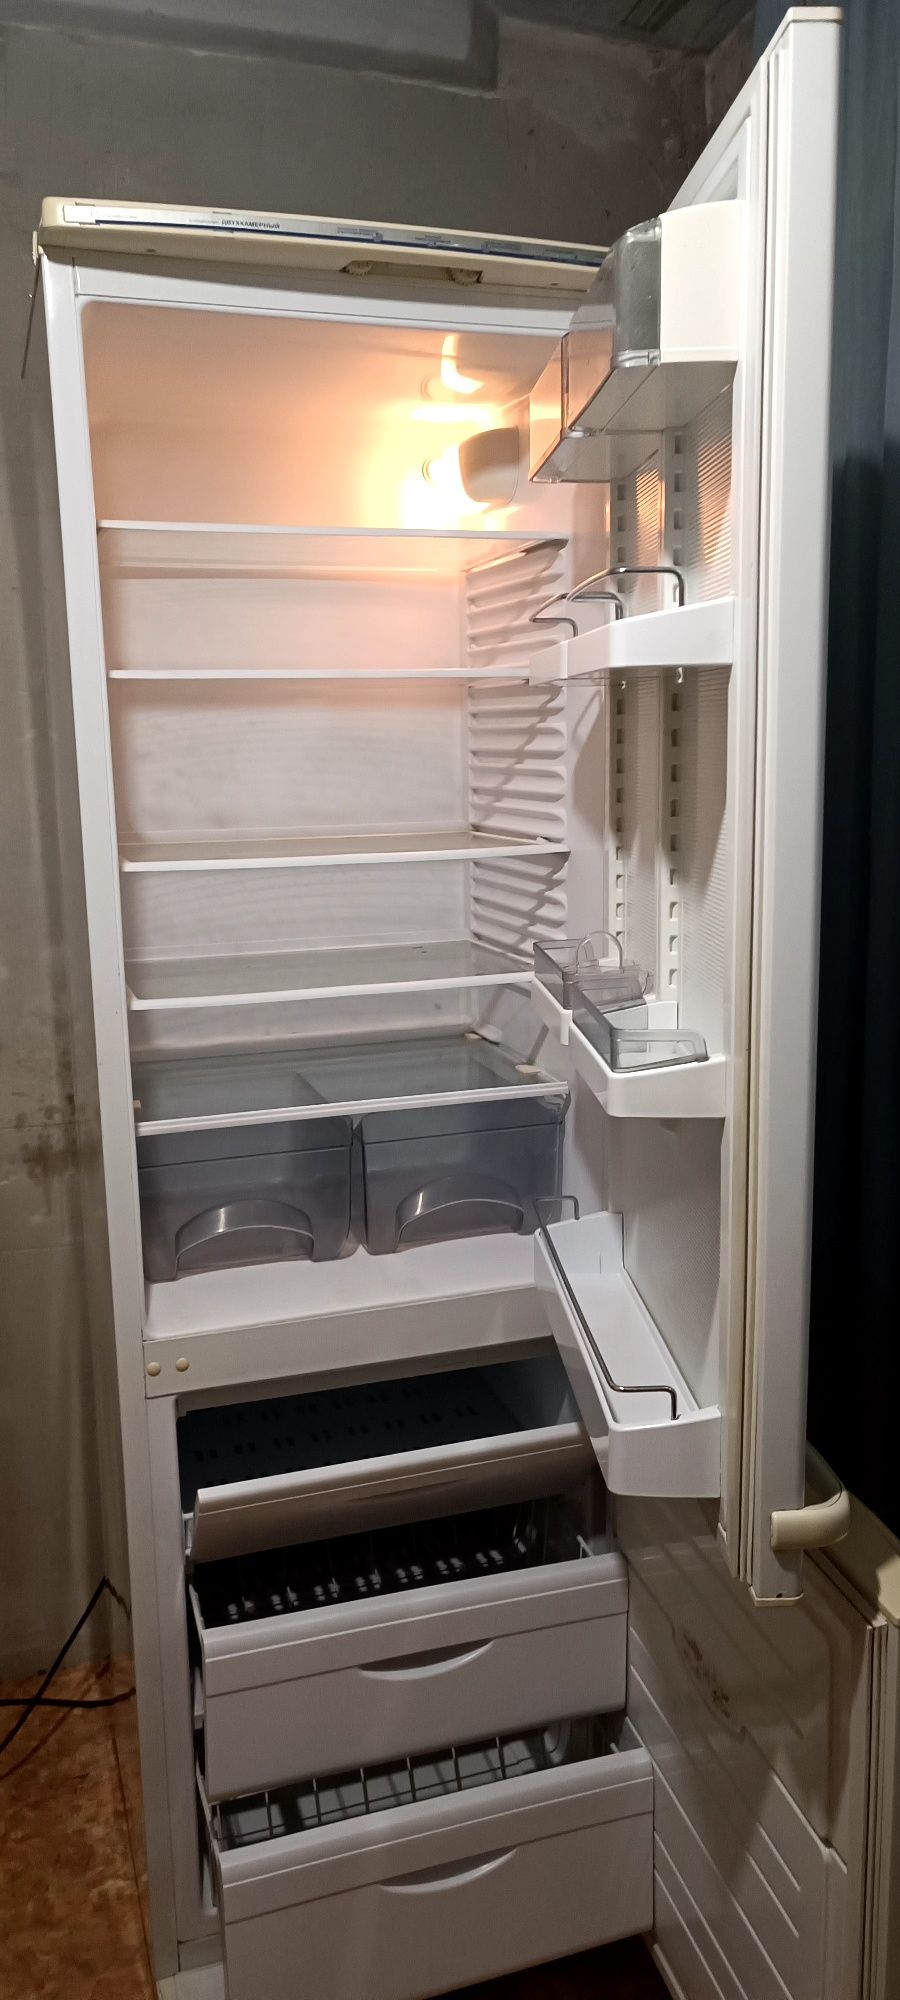 Продается холодильник марки "Атлант" .